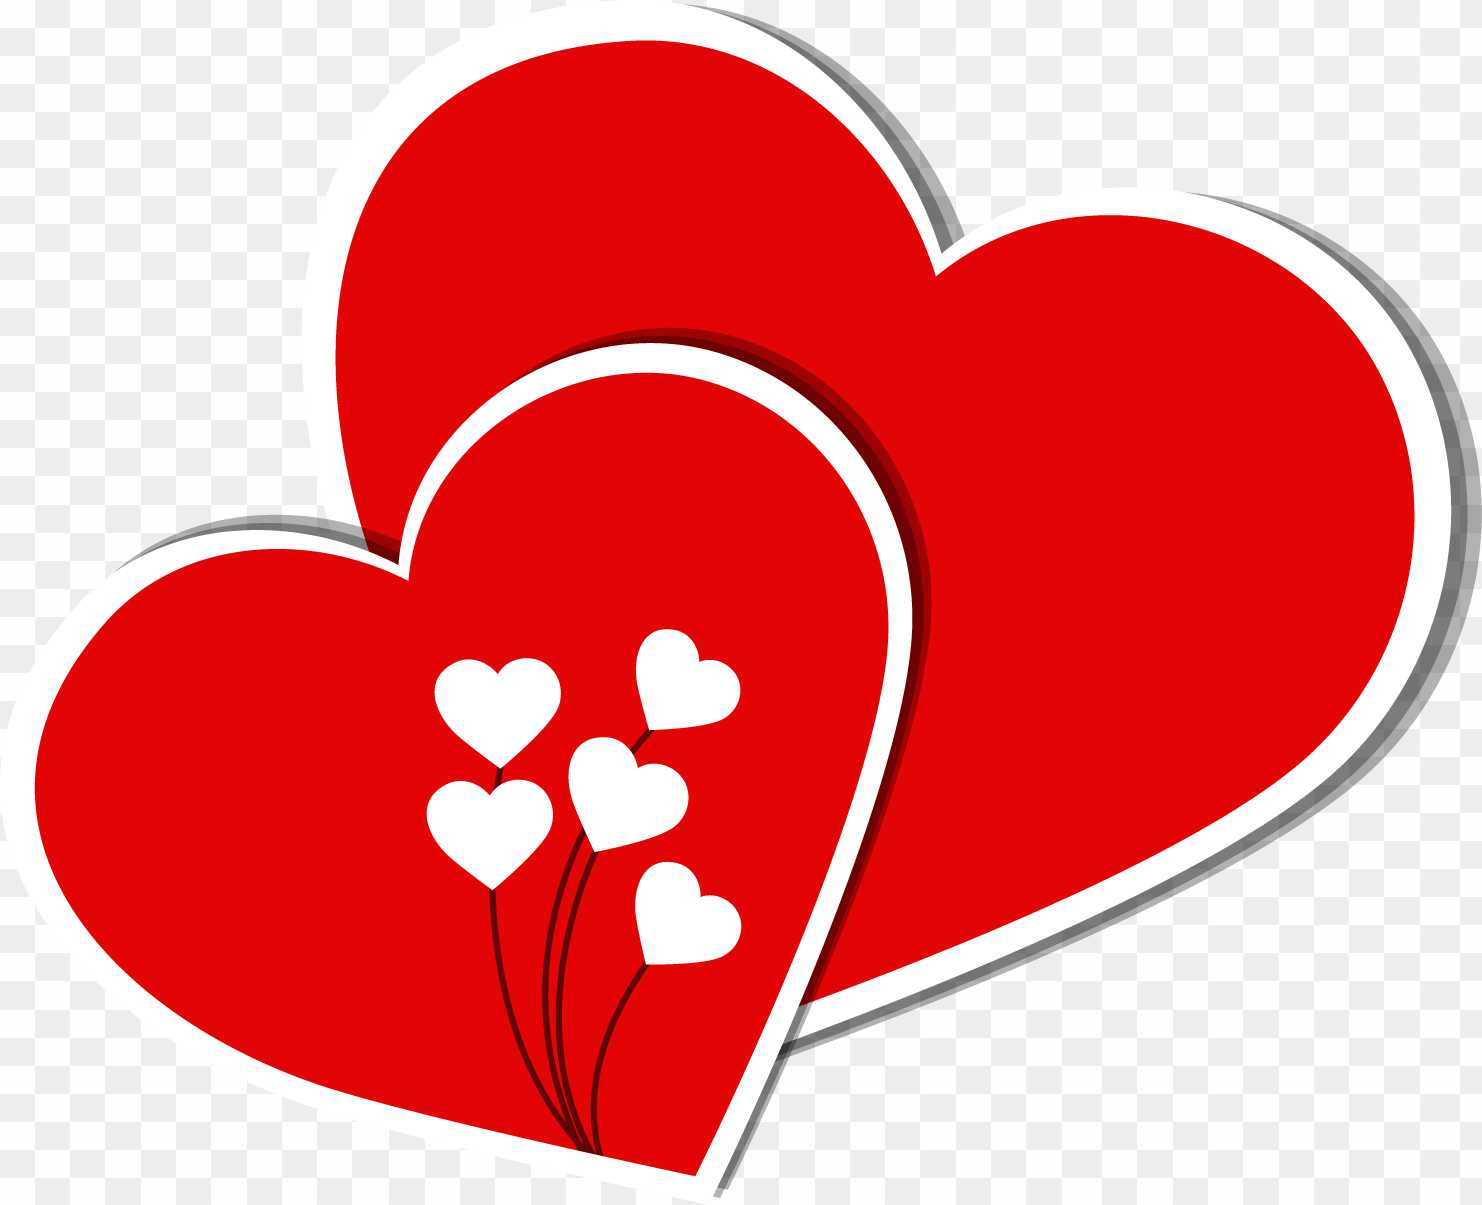 Trái tim: Trái tim luôn là biểu tượng của tình yêu, sự chân thành và lòng trắc ẩn. Hãy cùng chiêm ngưỡng những hình ảnh về trái tim để cảm nhận được điều đó.